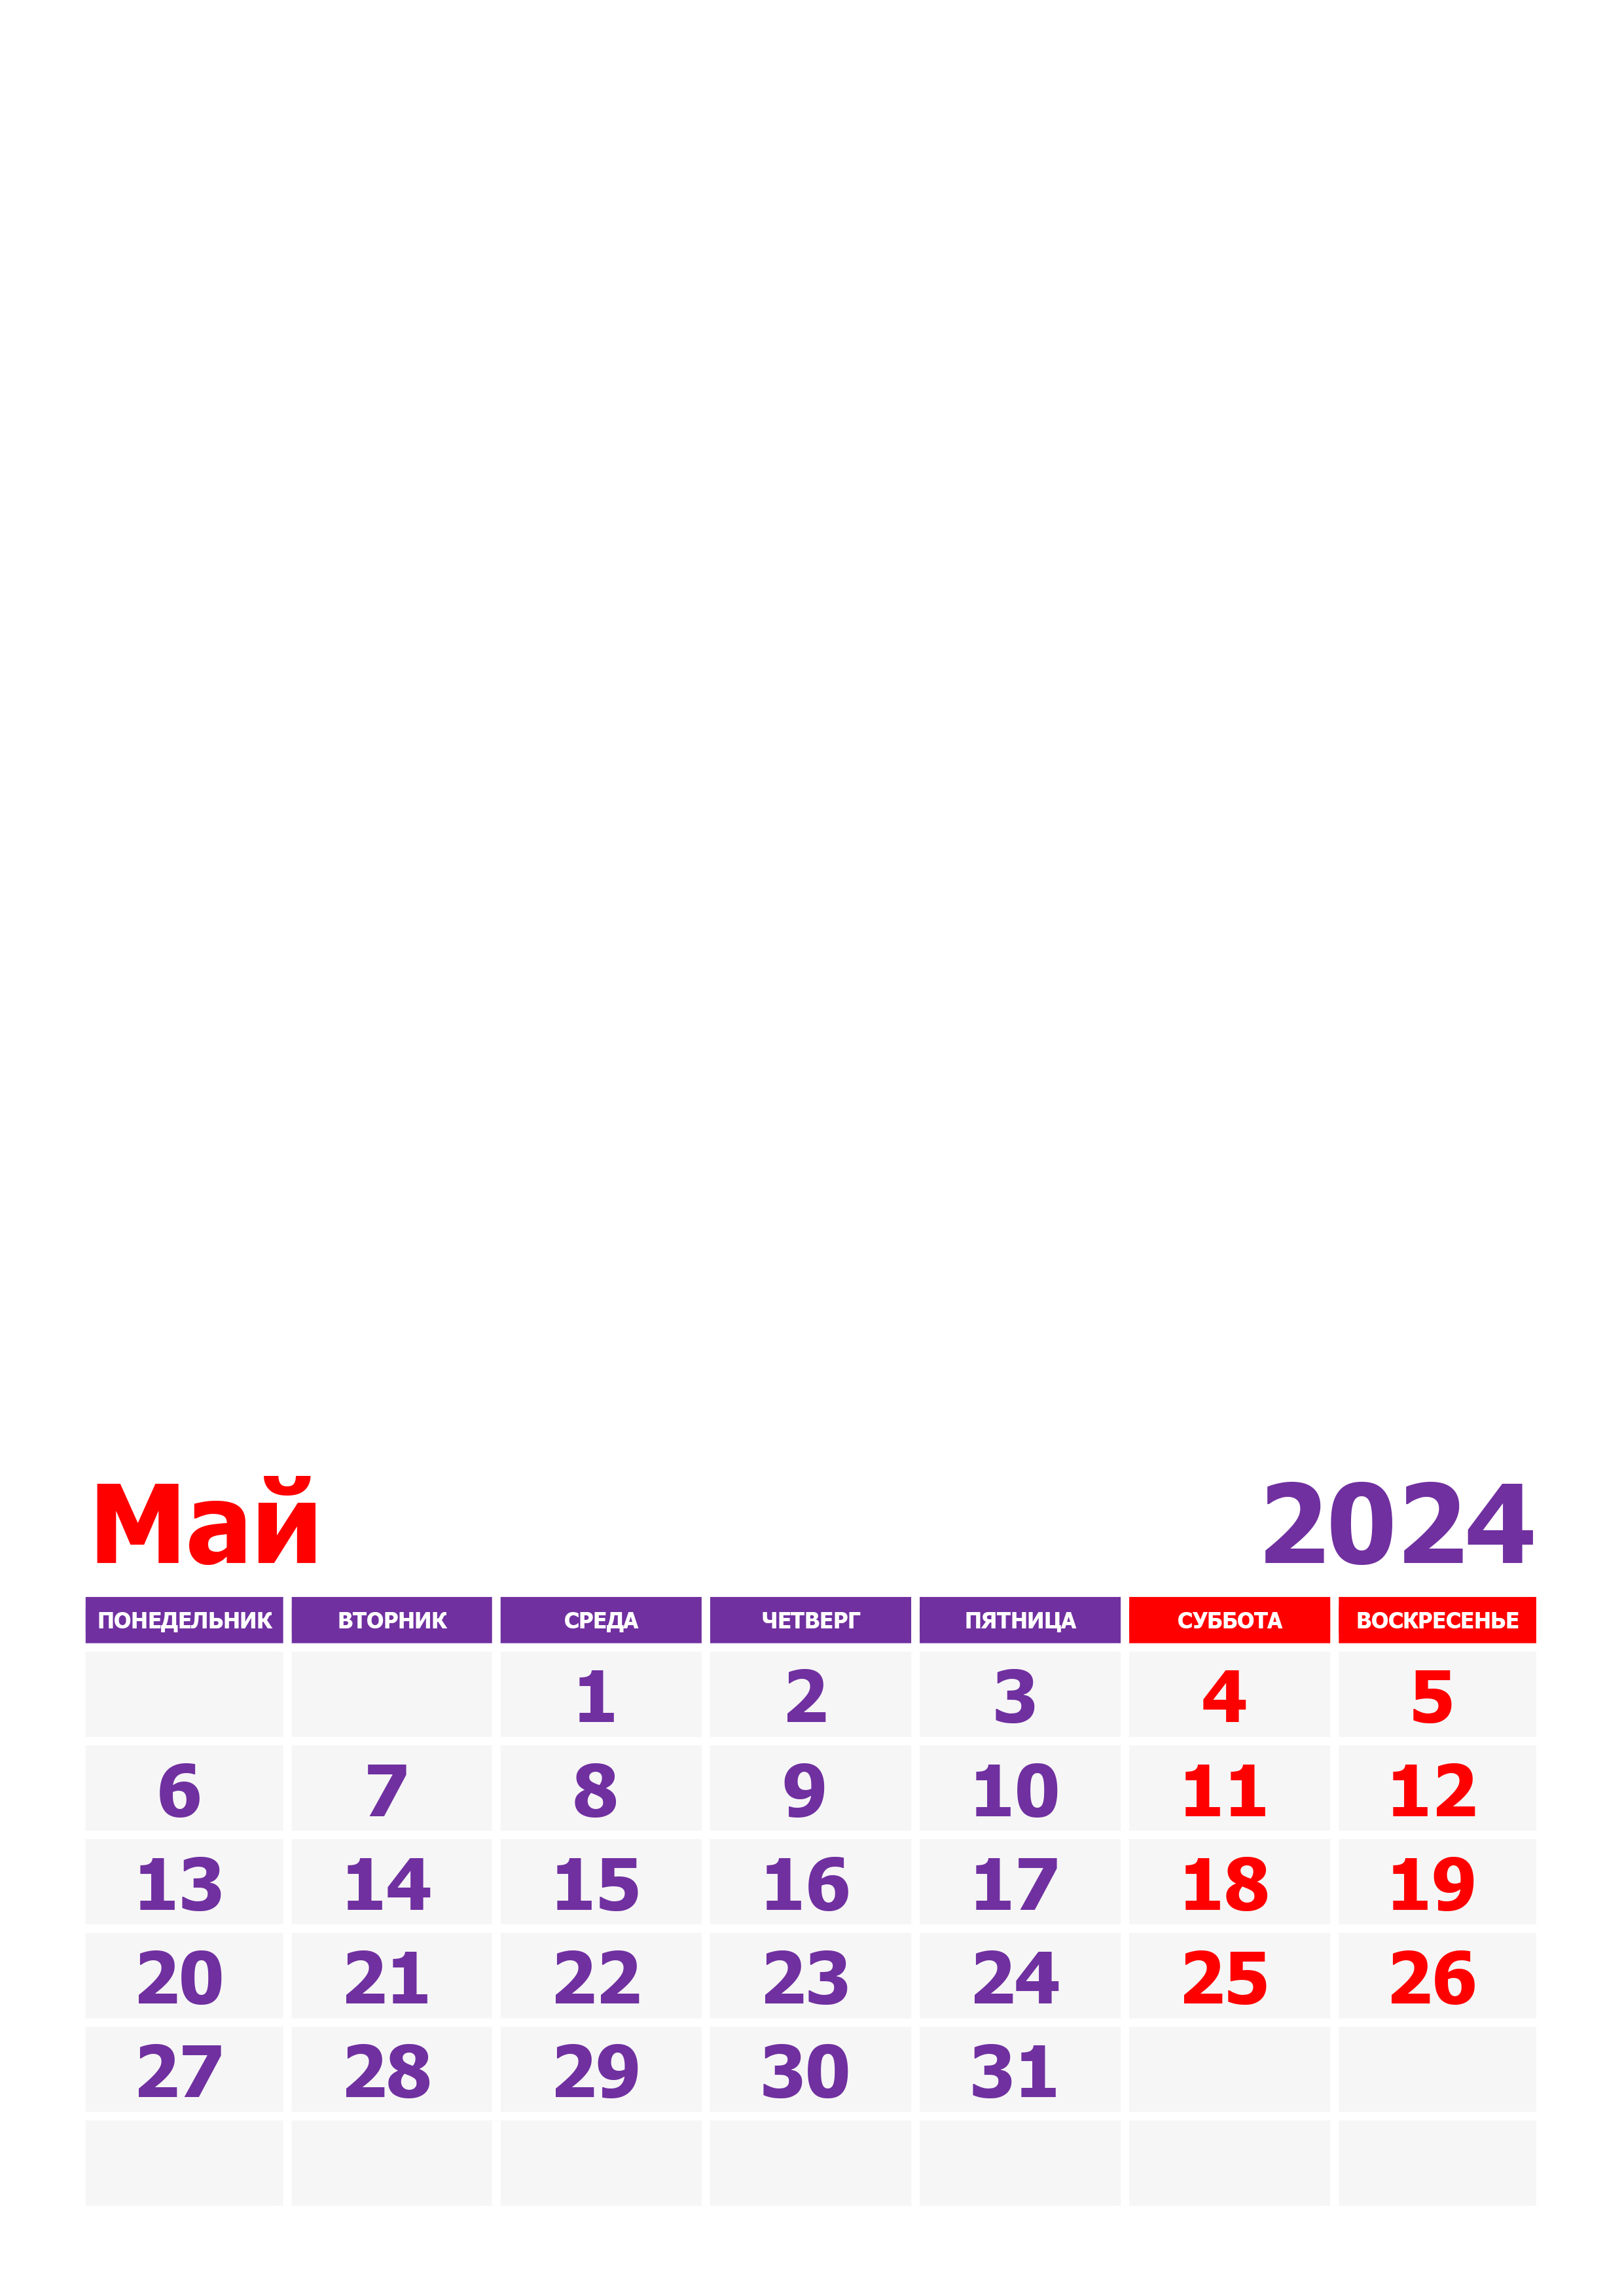 Сколько дней осталось до 26 мая 2024г